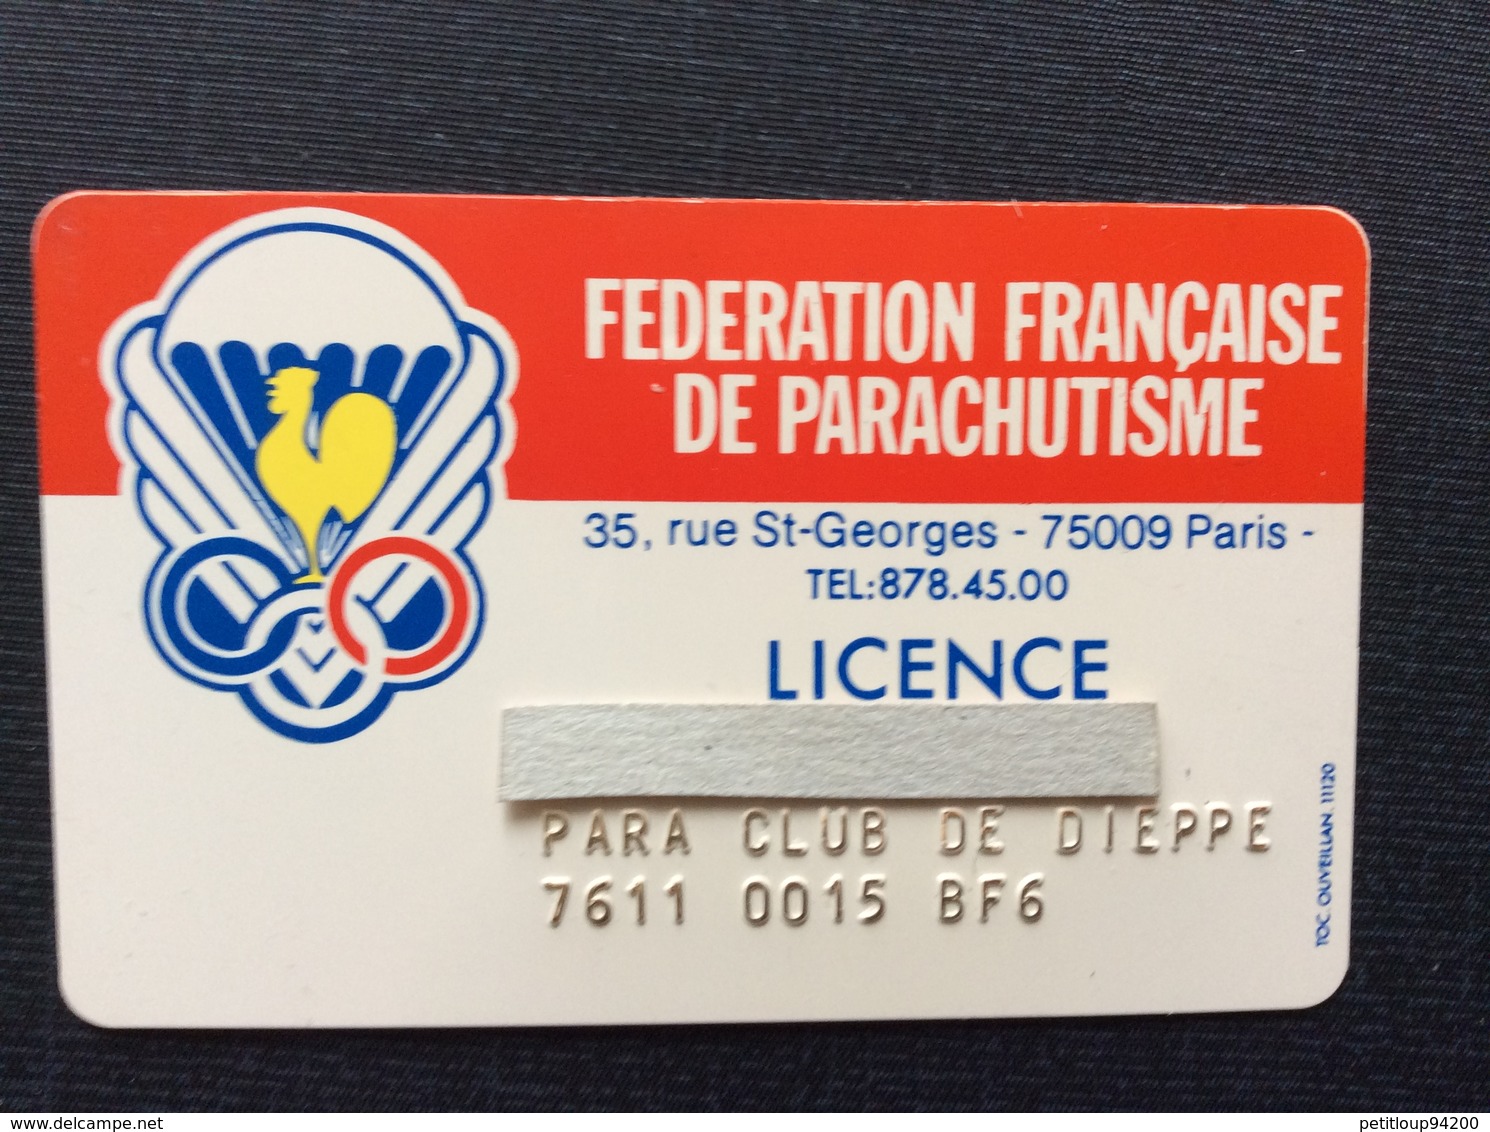 FEDERATION FRANÇAISE DE PARACHUTISME  Licence  PARA CLUB DE DIEPPE - Fallschirmspringen